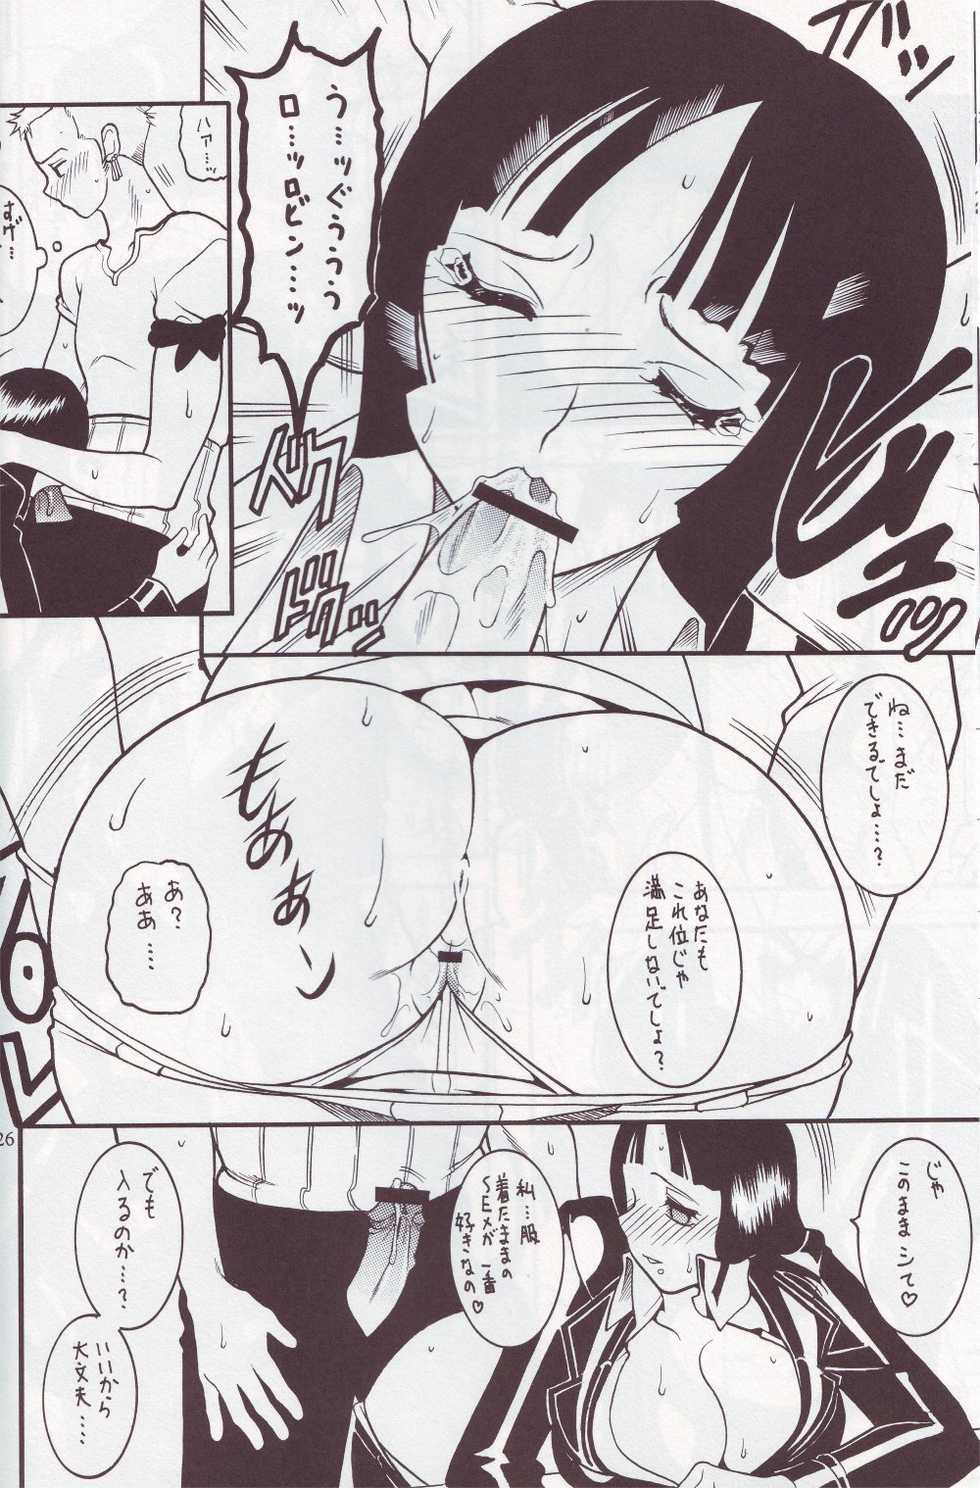 [SEMEDAIN G (Mizutani Mint, Mokkouyou Bond)] SEMEDAIN G WORKS vol.24 - Shuukan Shounen Jump Hon 4 (Bleach, One Piece) - Page 25